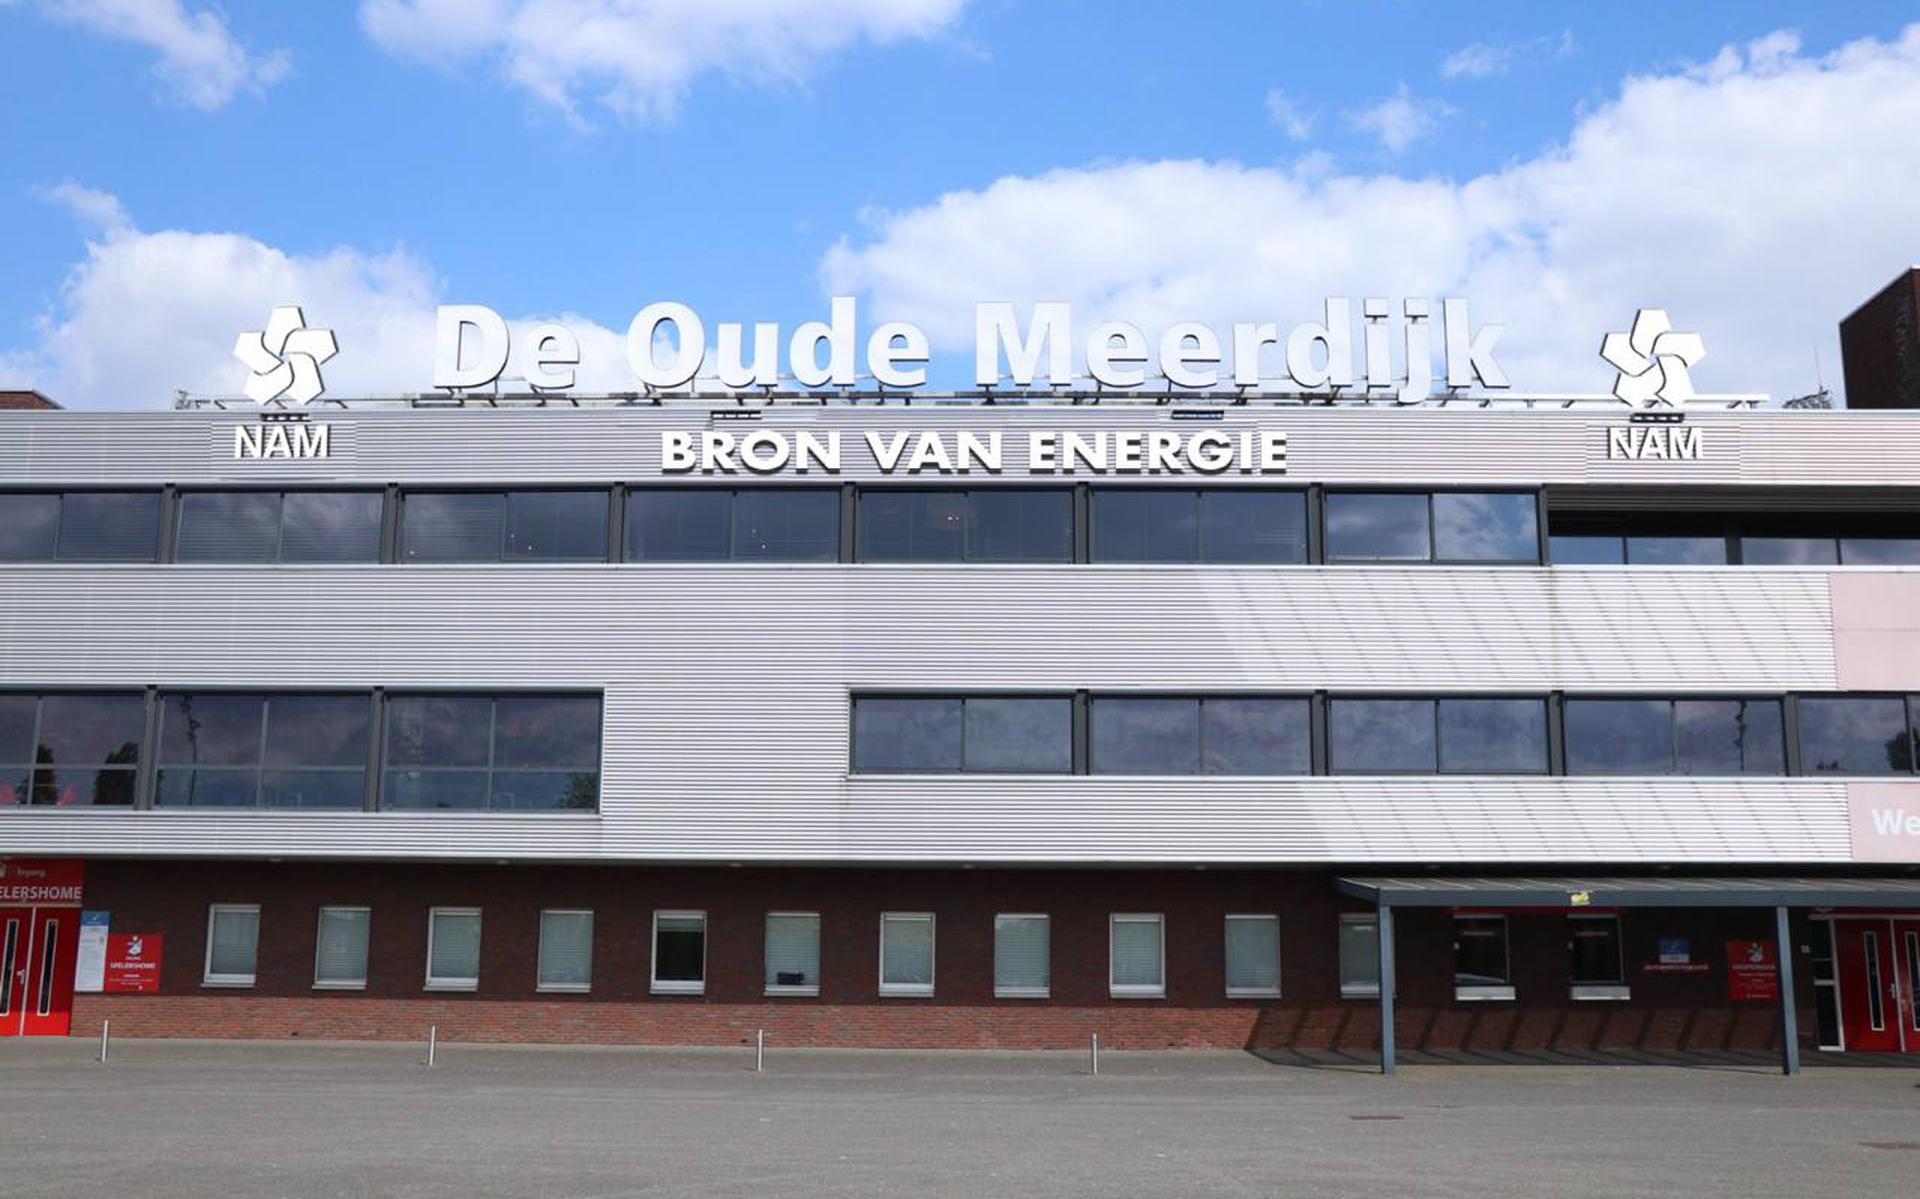 Met de NAM als sponsor verandert er niets aan de huidige stadionnaam De Oude Meerdijk.